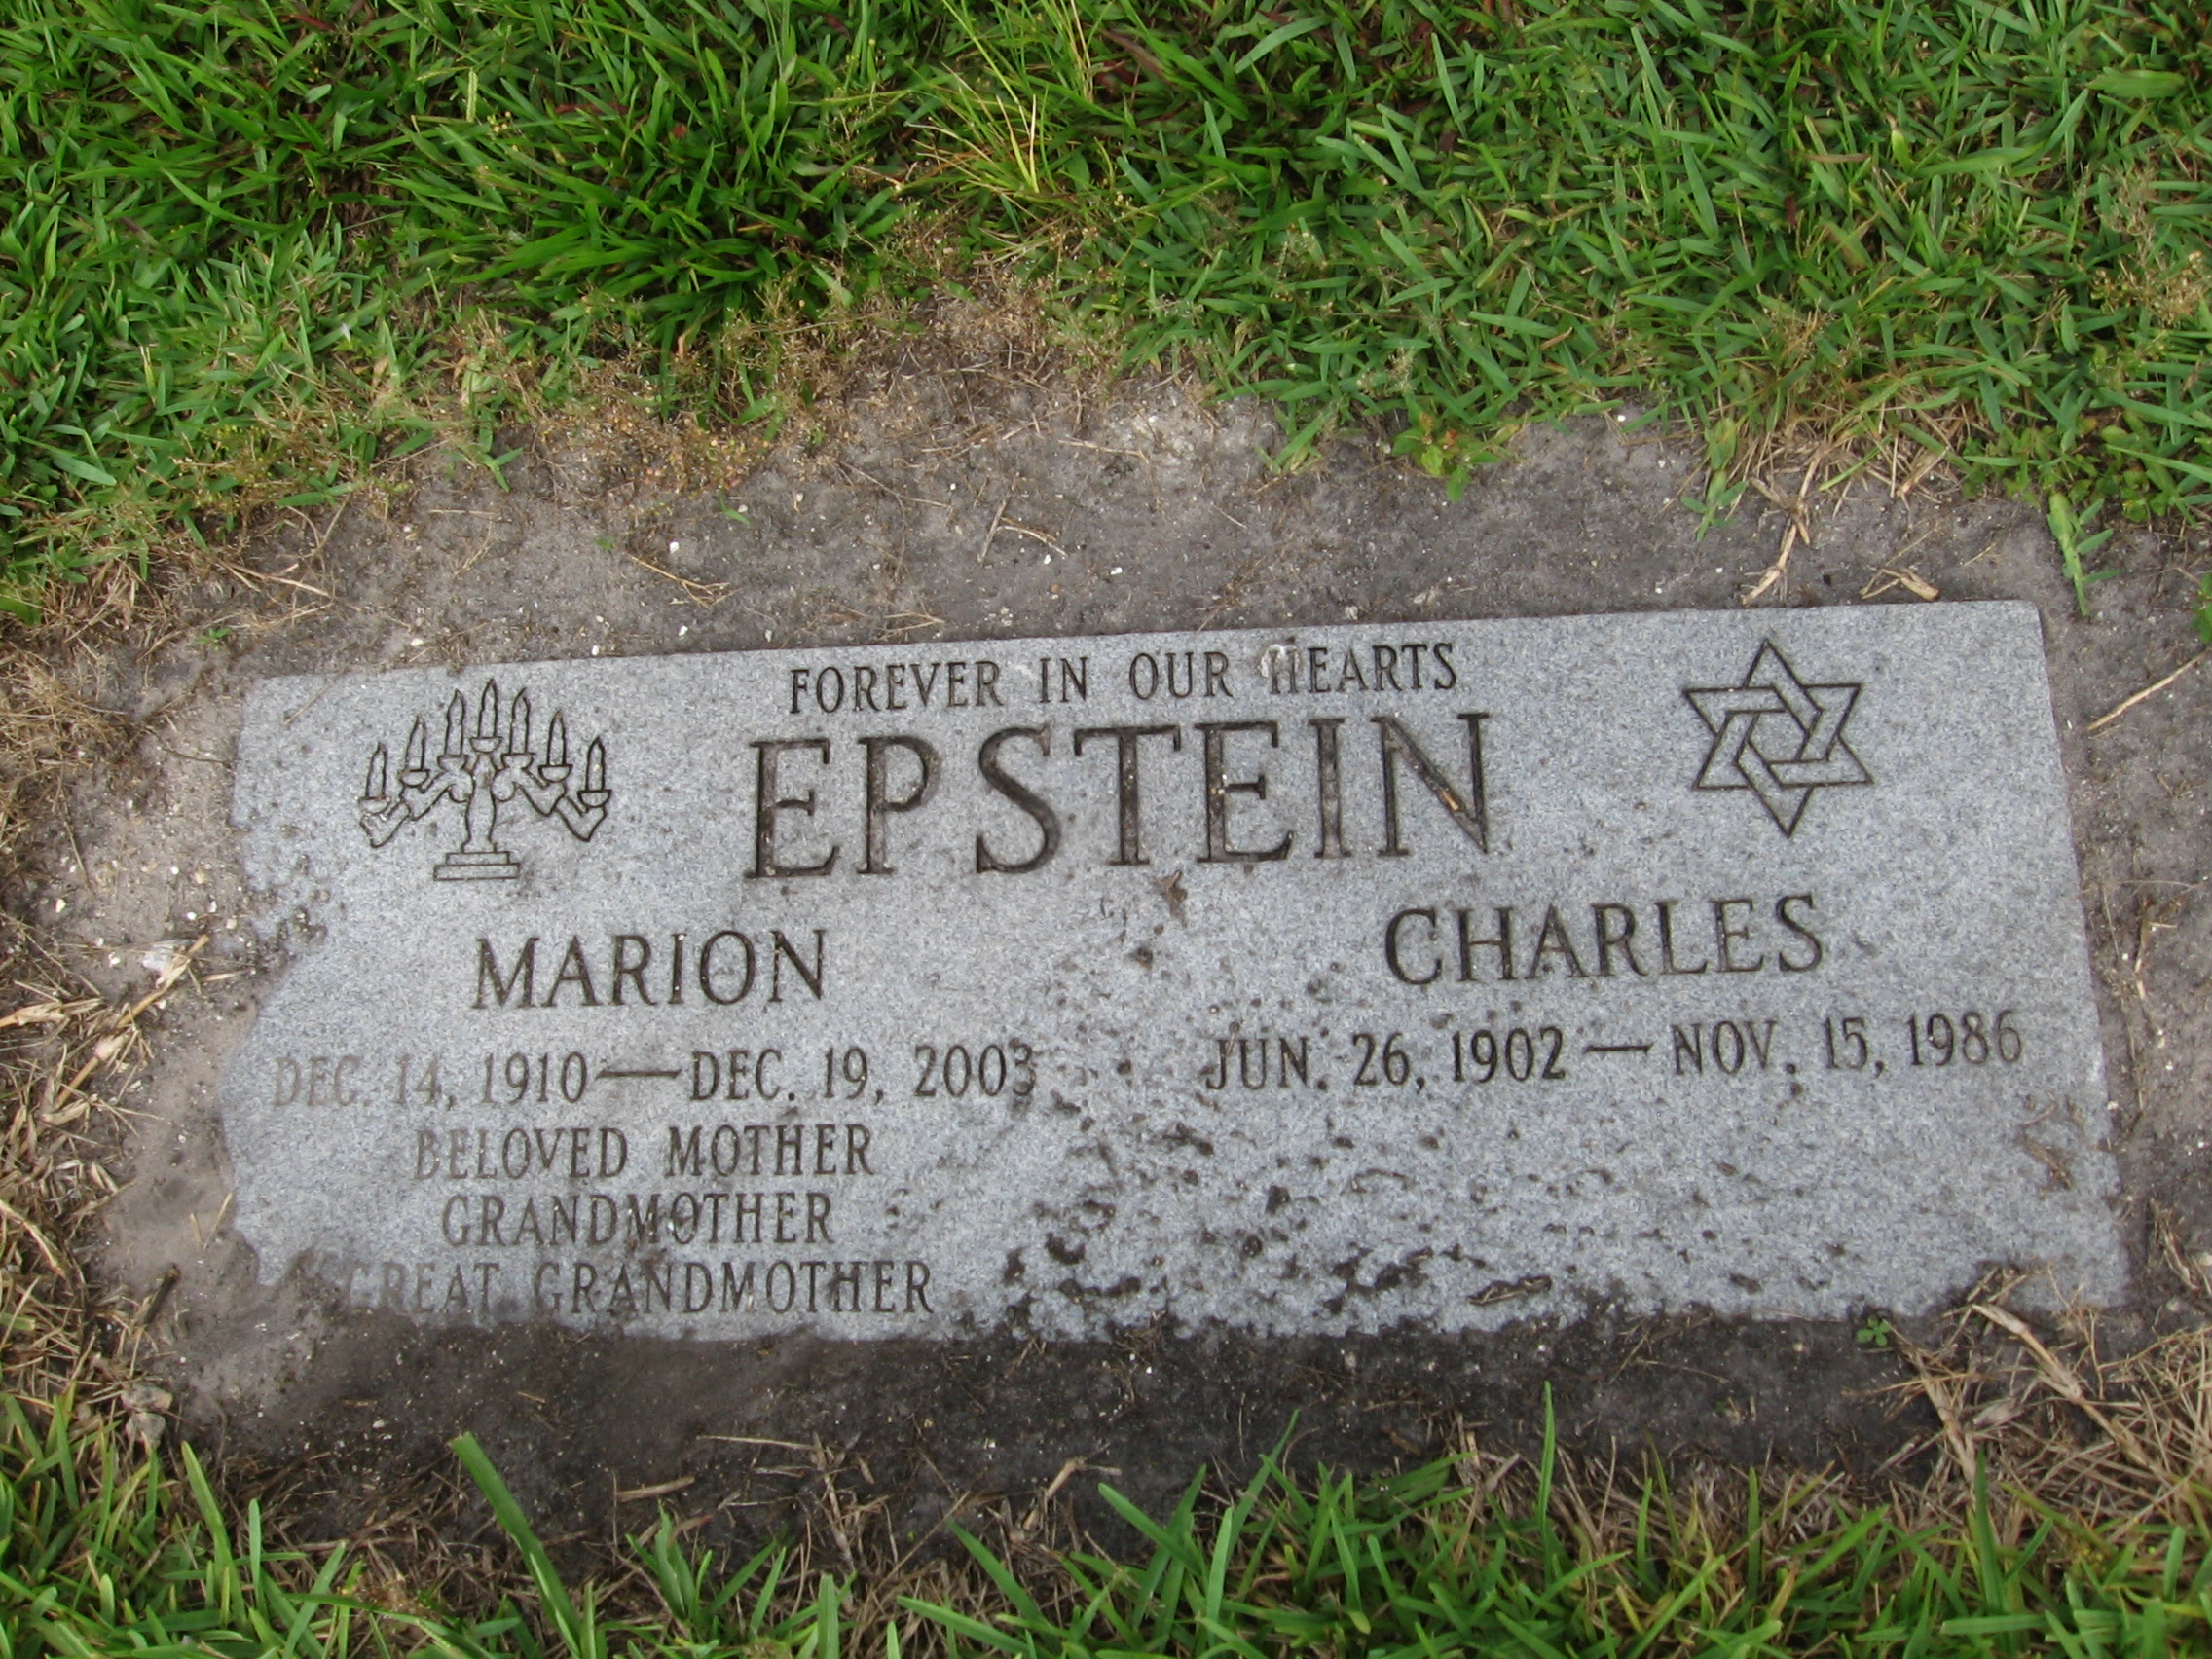 Charles Epstein